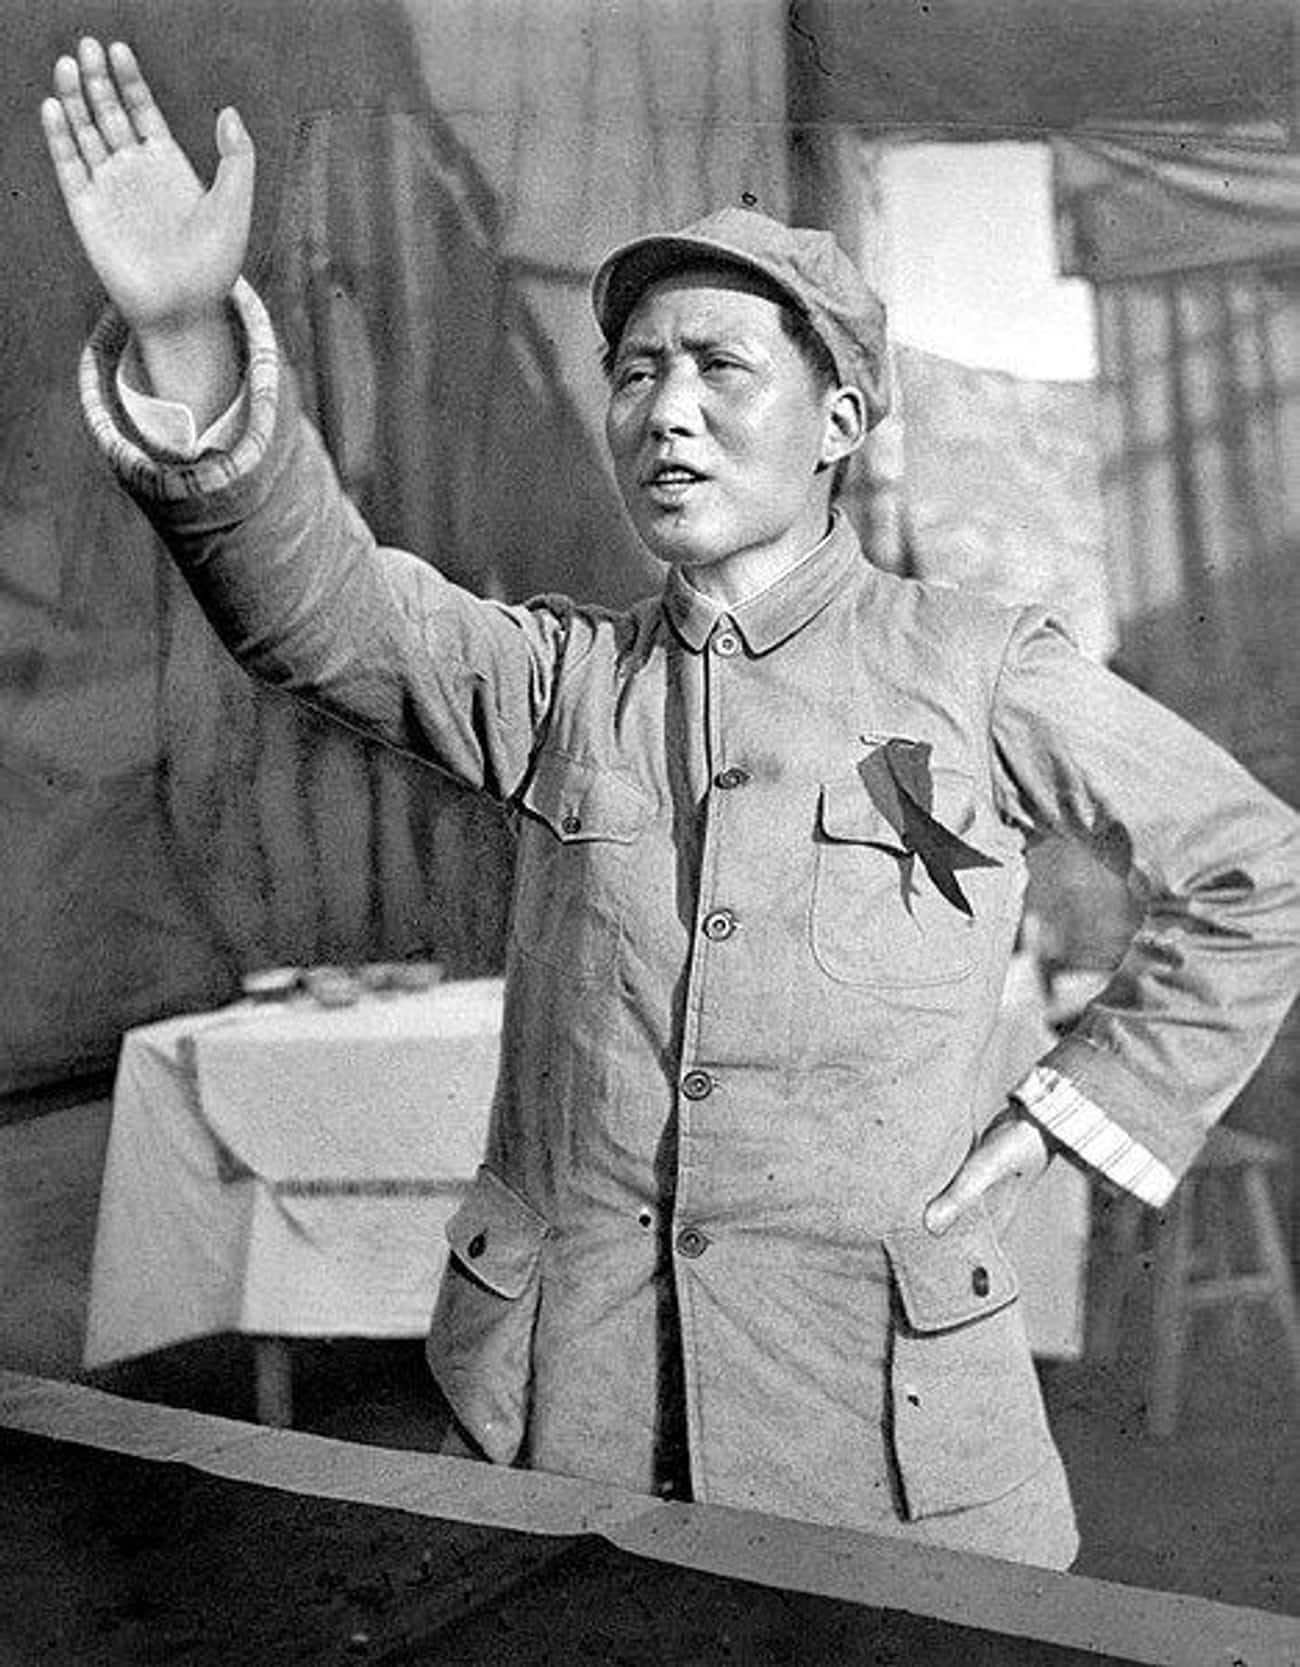 Mao Zedong, 'Serve The People' Speech - September 8, 1944